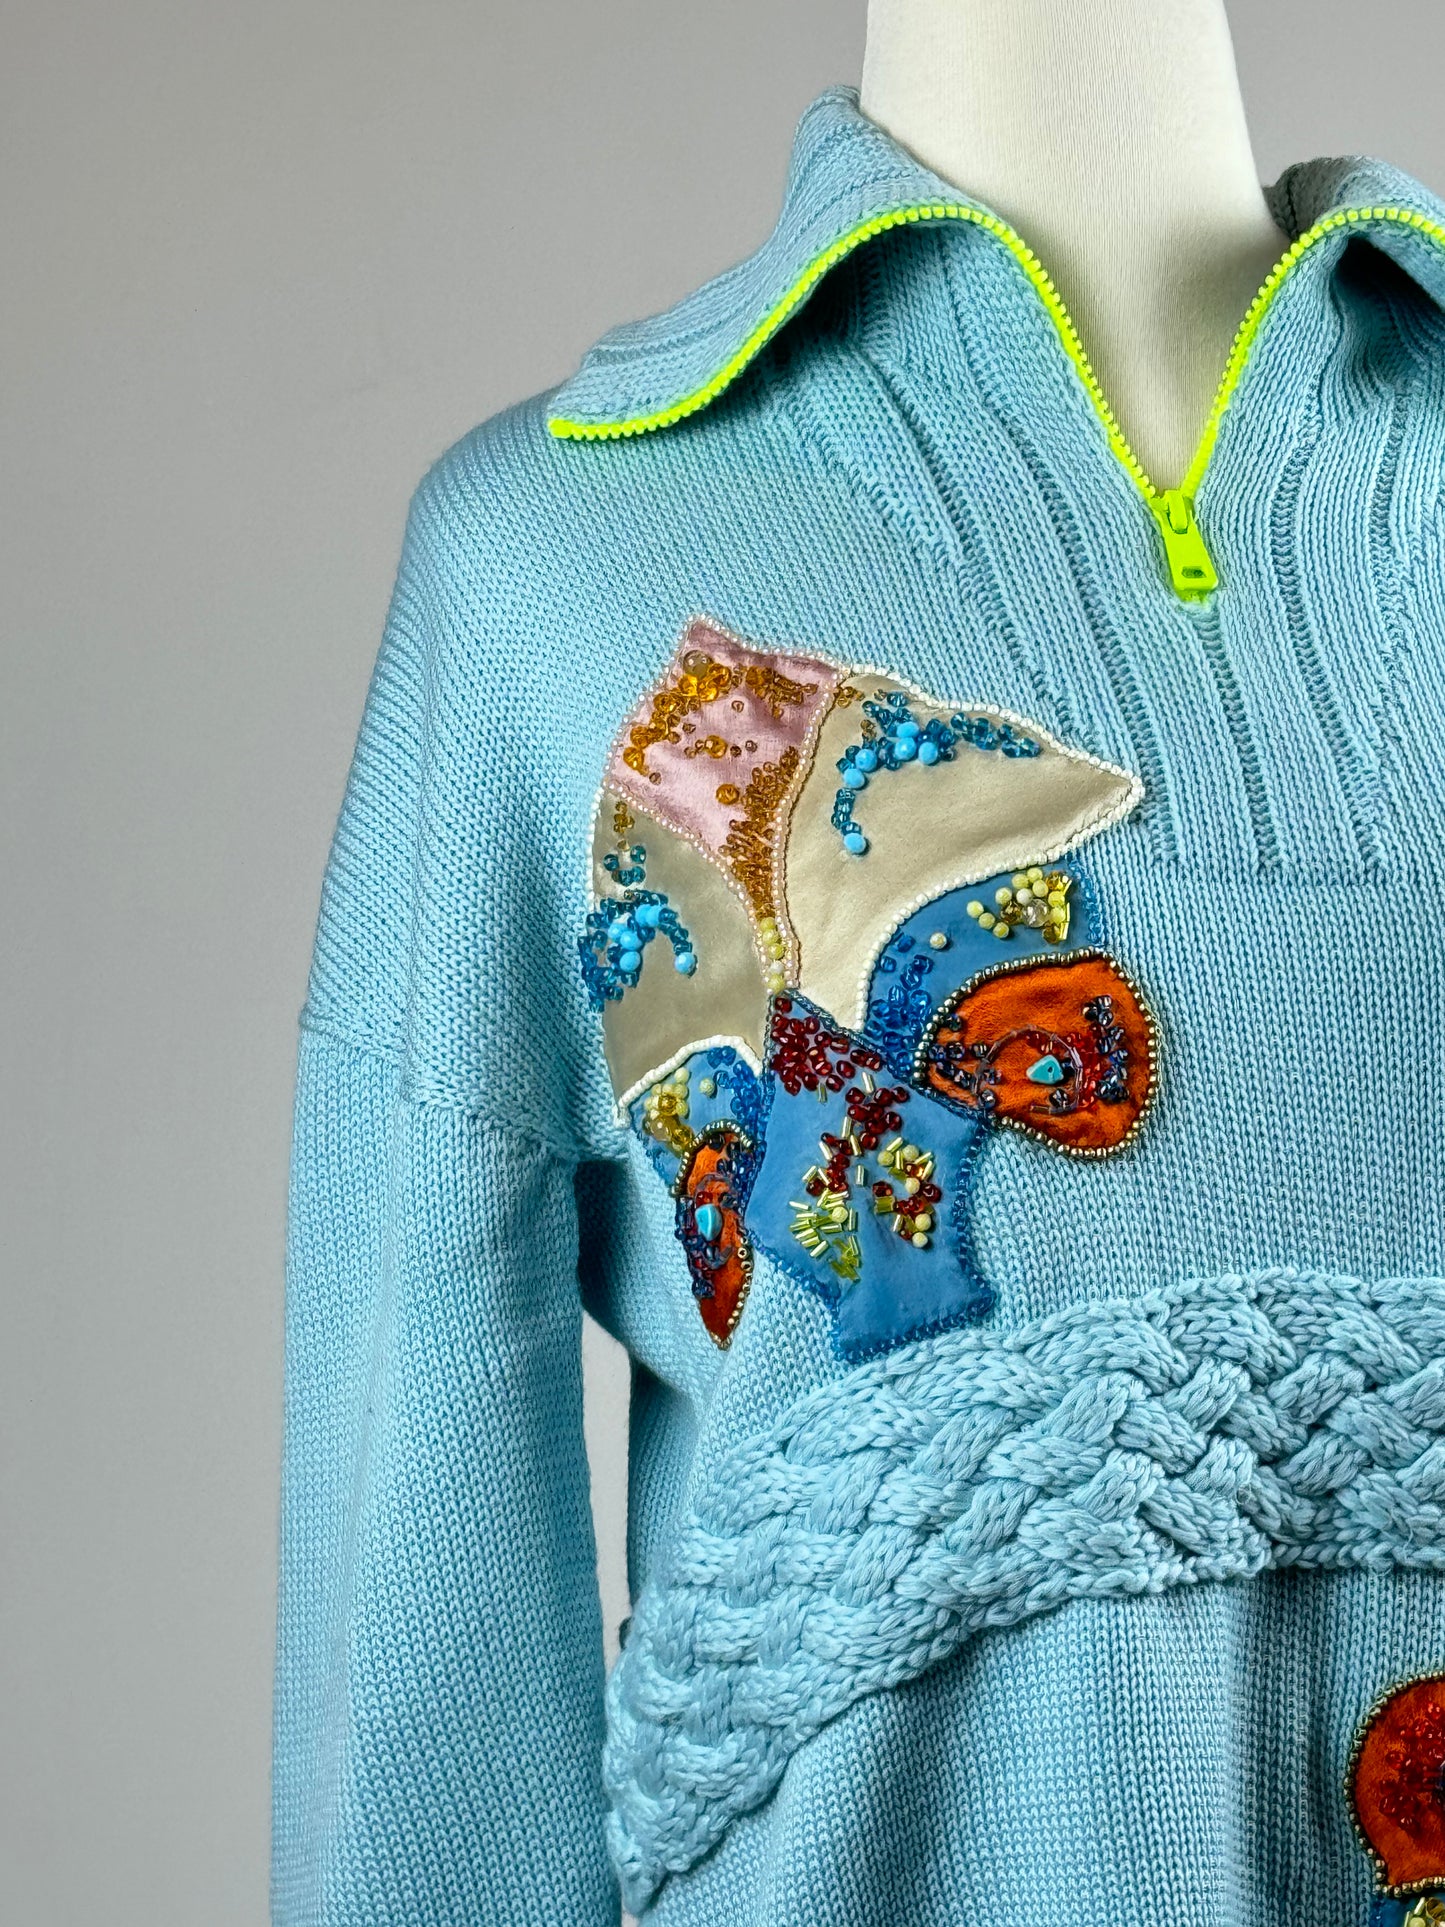 ცისფერი ჯერპრი ელვა-შესაკრავით და აპლიკაციებით/Blue virgin wool Pullover with embroidery